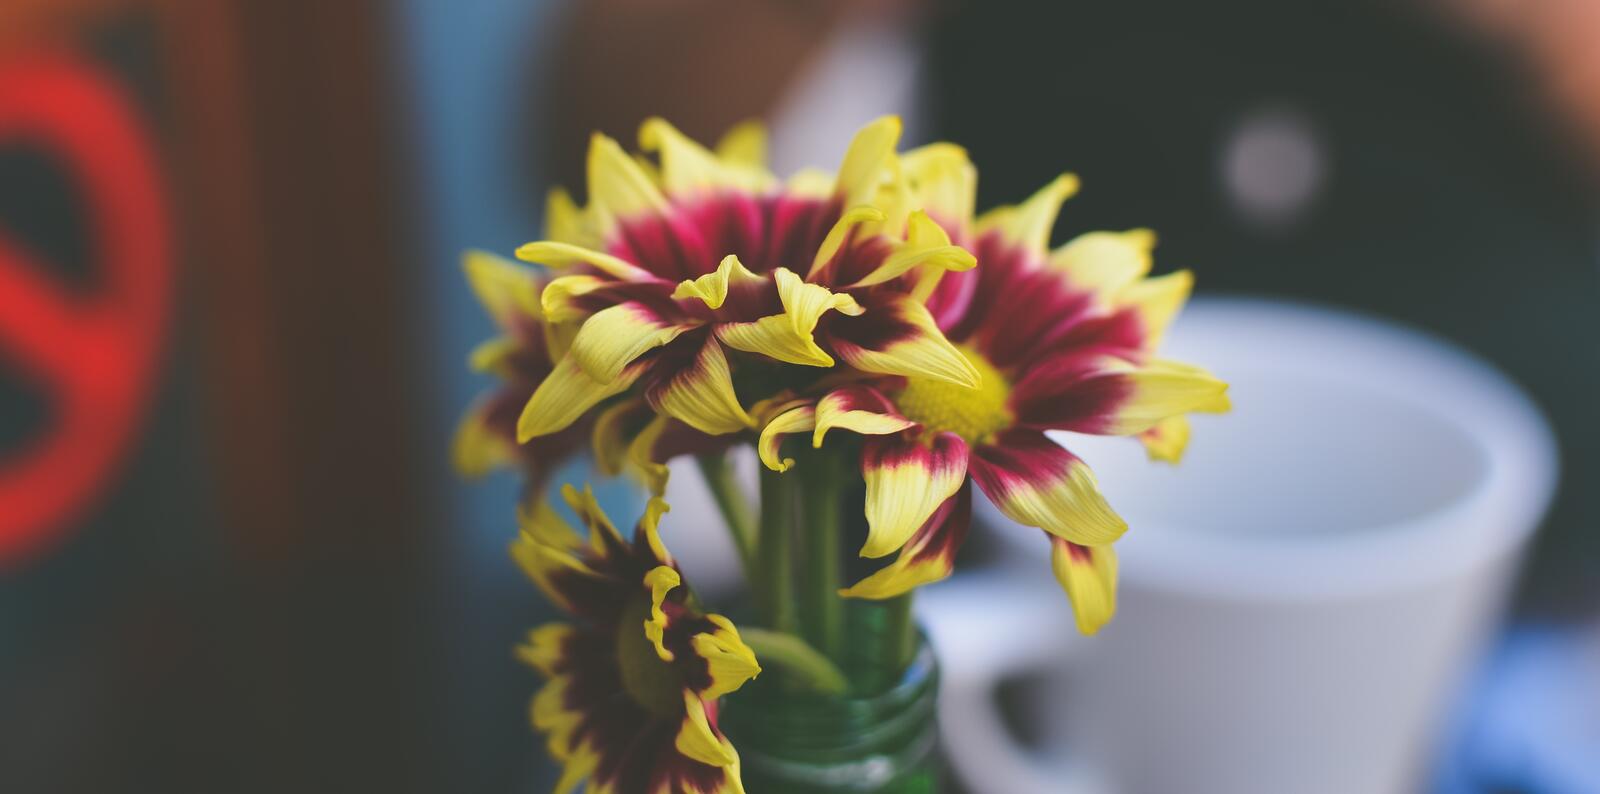 Бесплатное фото Желтые цветочки в вазе